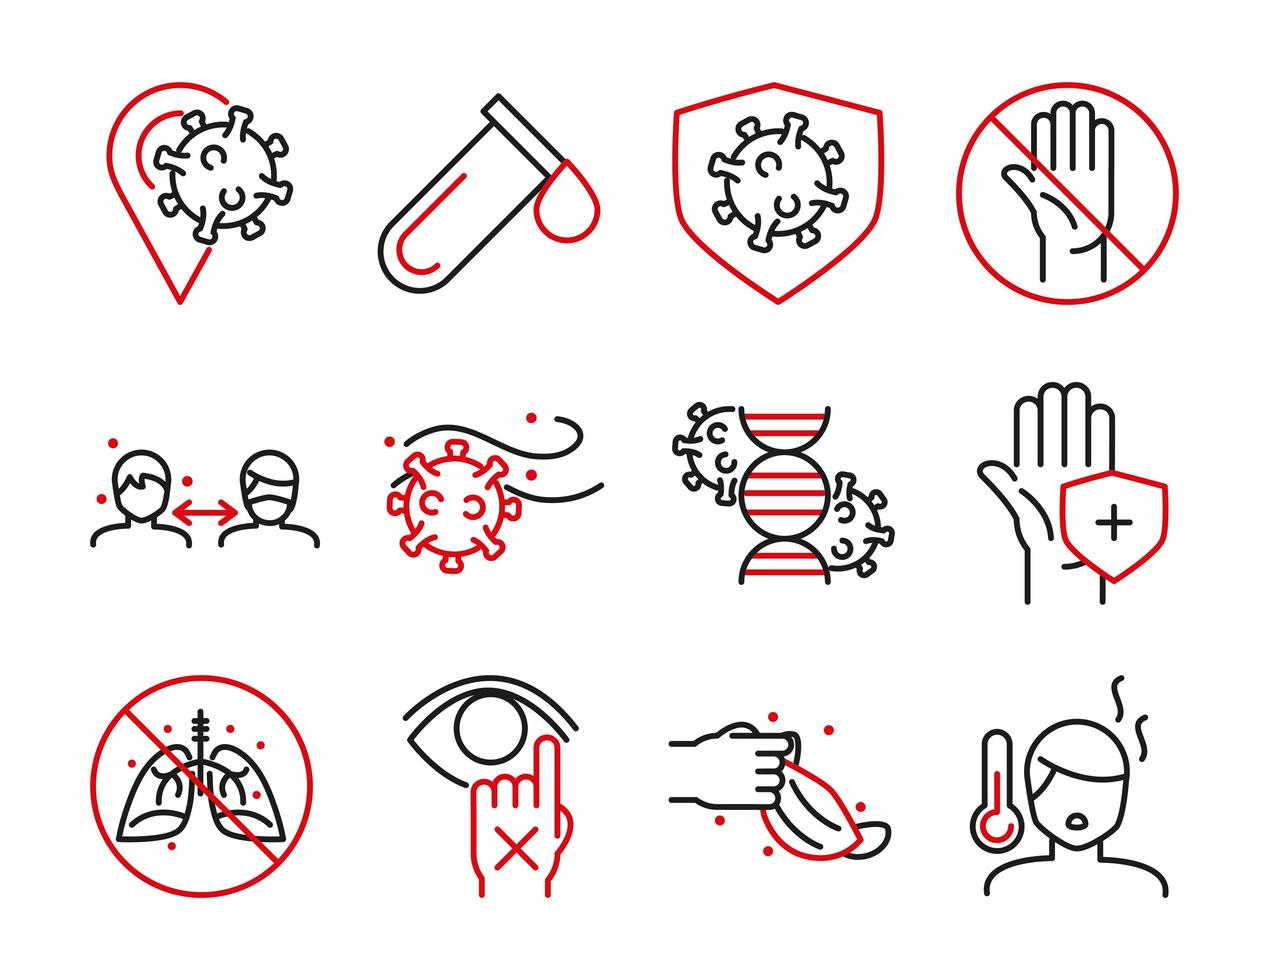 Paquete de iconos de pictogramas bicolores de atención médica e infección viral vector